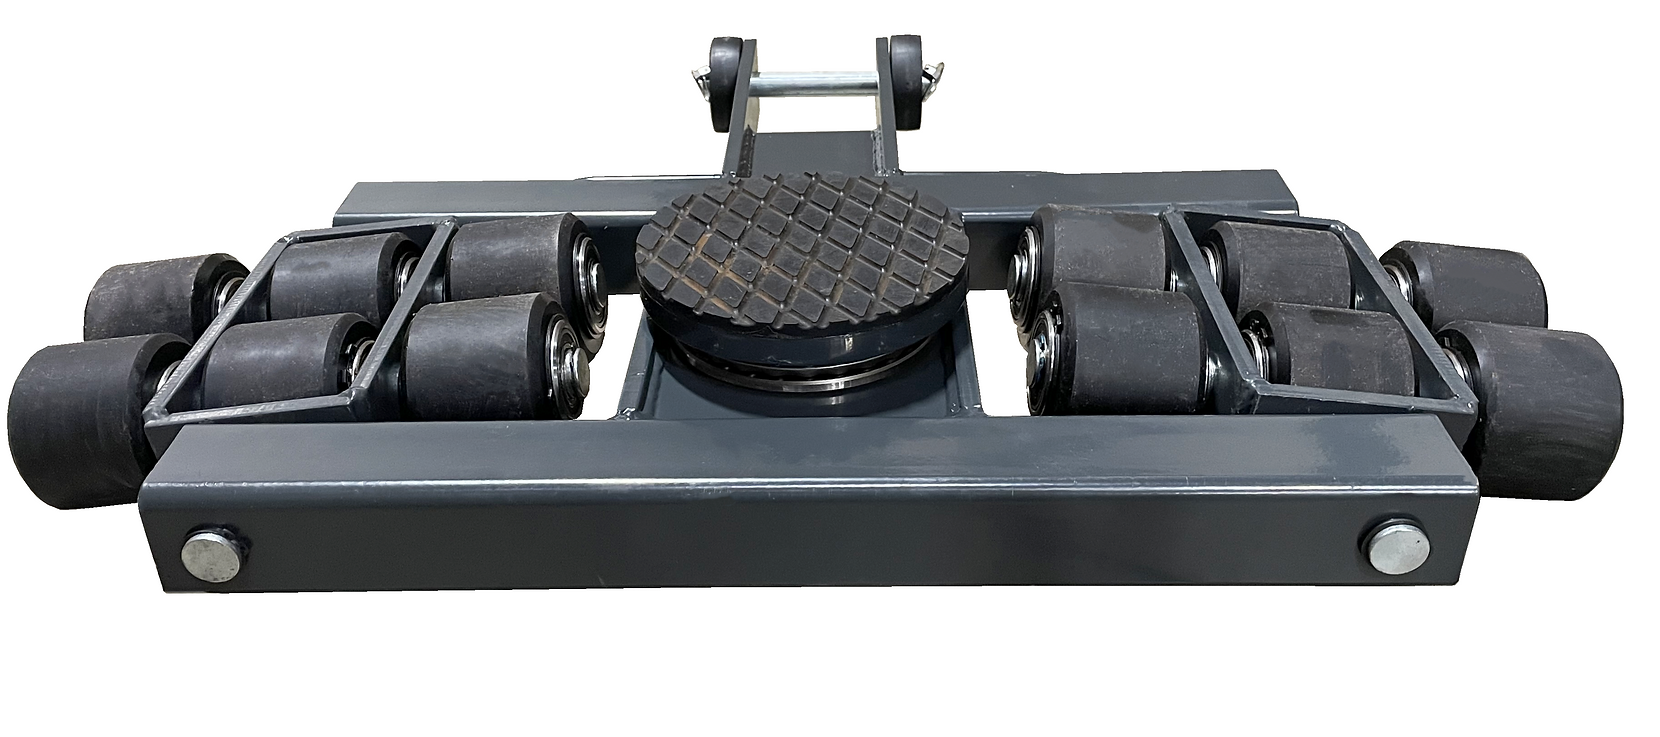 Pake Handling Tools PAKSS01 Steerable Skates Kits 18 Ton Capacity New